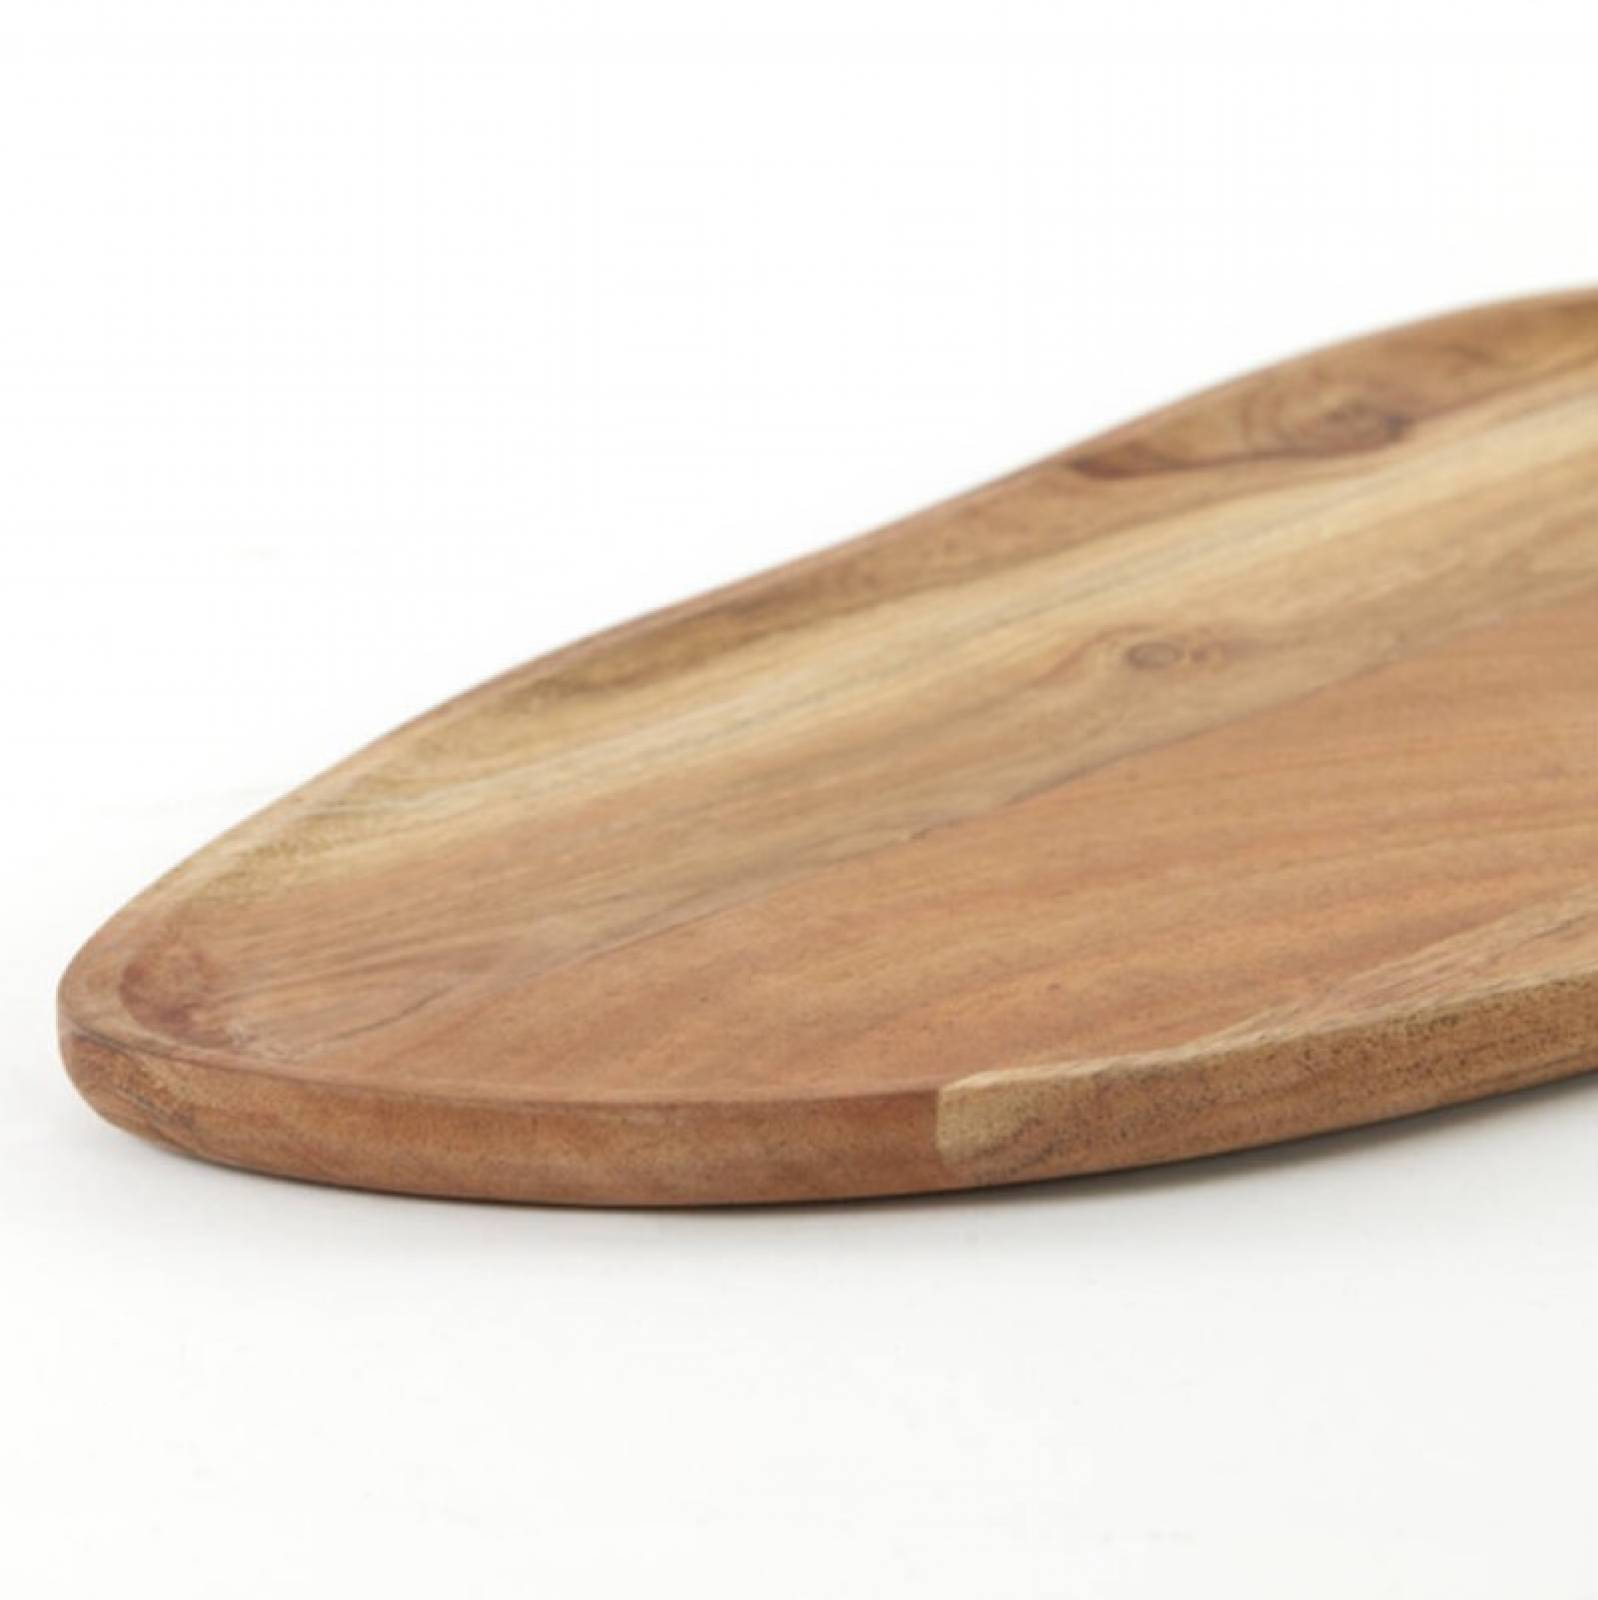 Wooden Organic Shaped Acacia Dish thumbnails